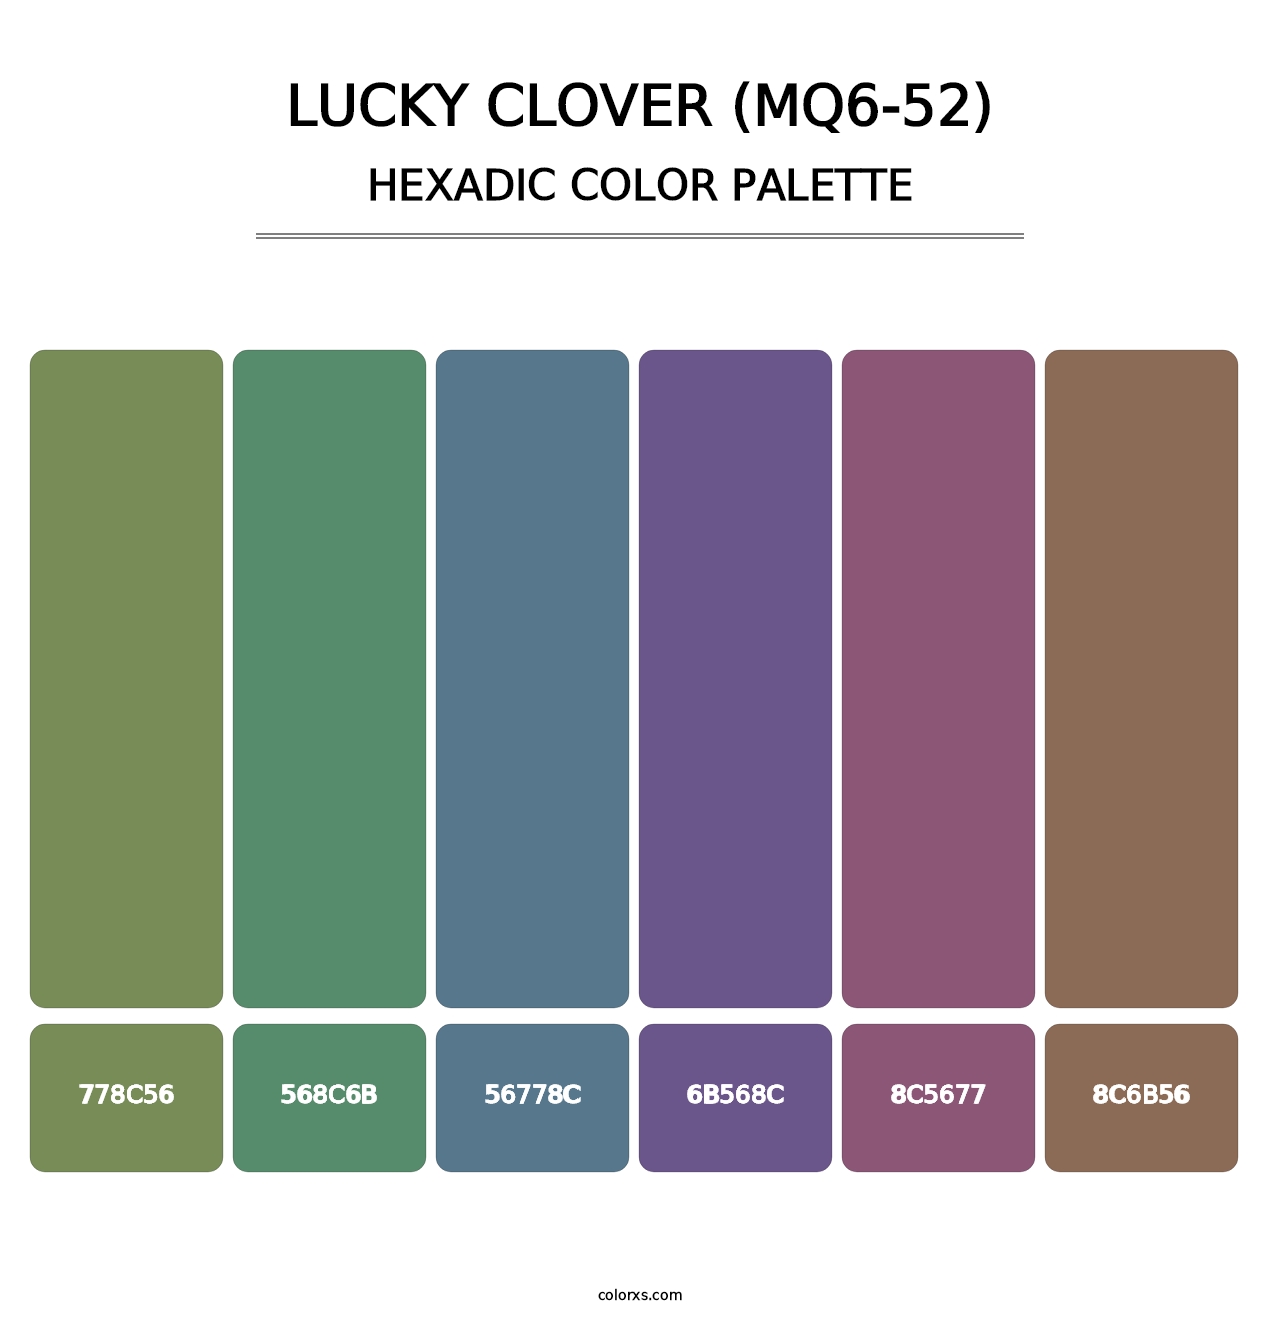 Lucky Clover (MQ6-52) - Hexadic Color Palette